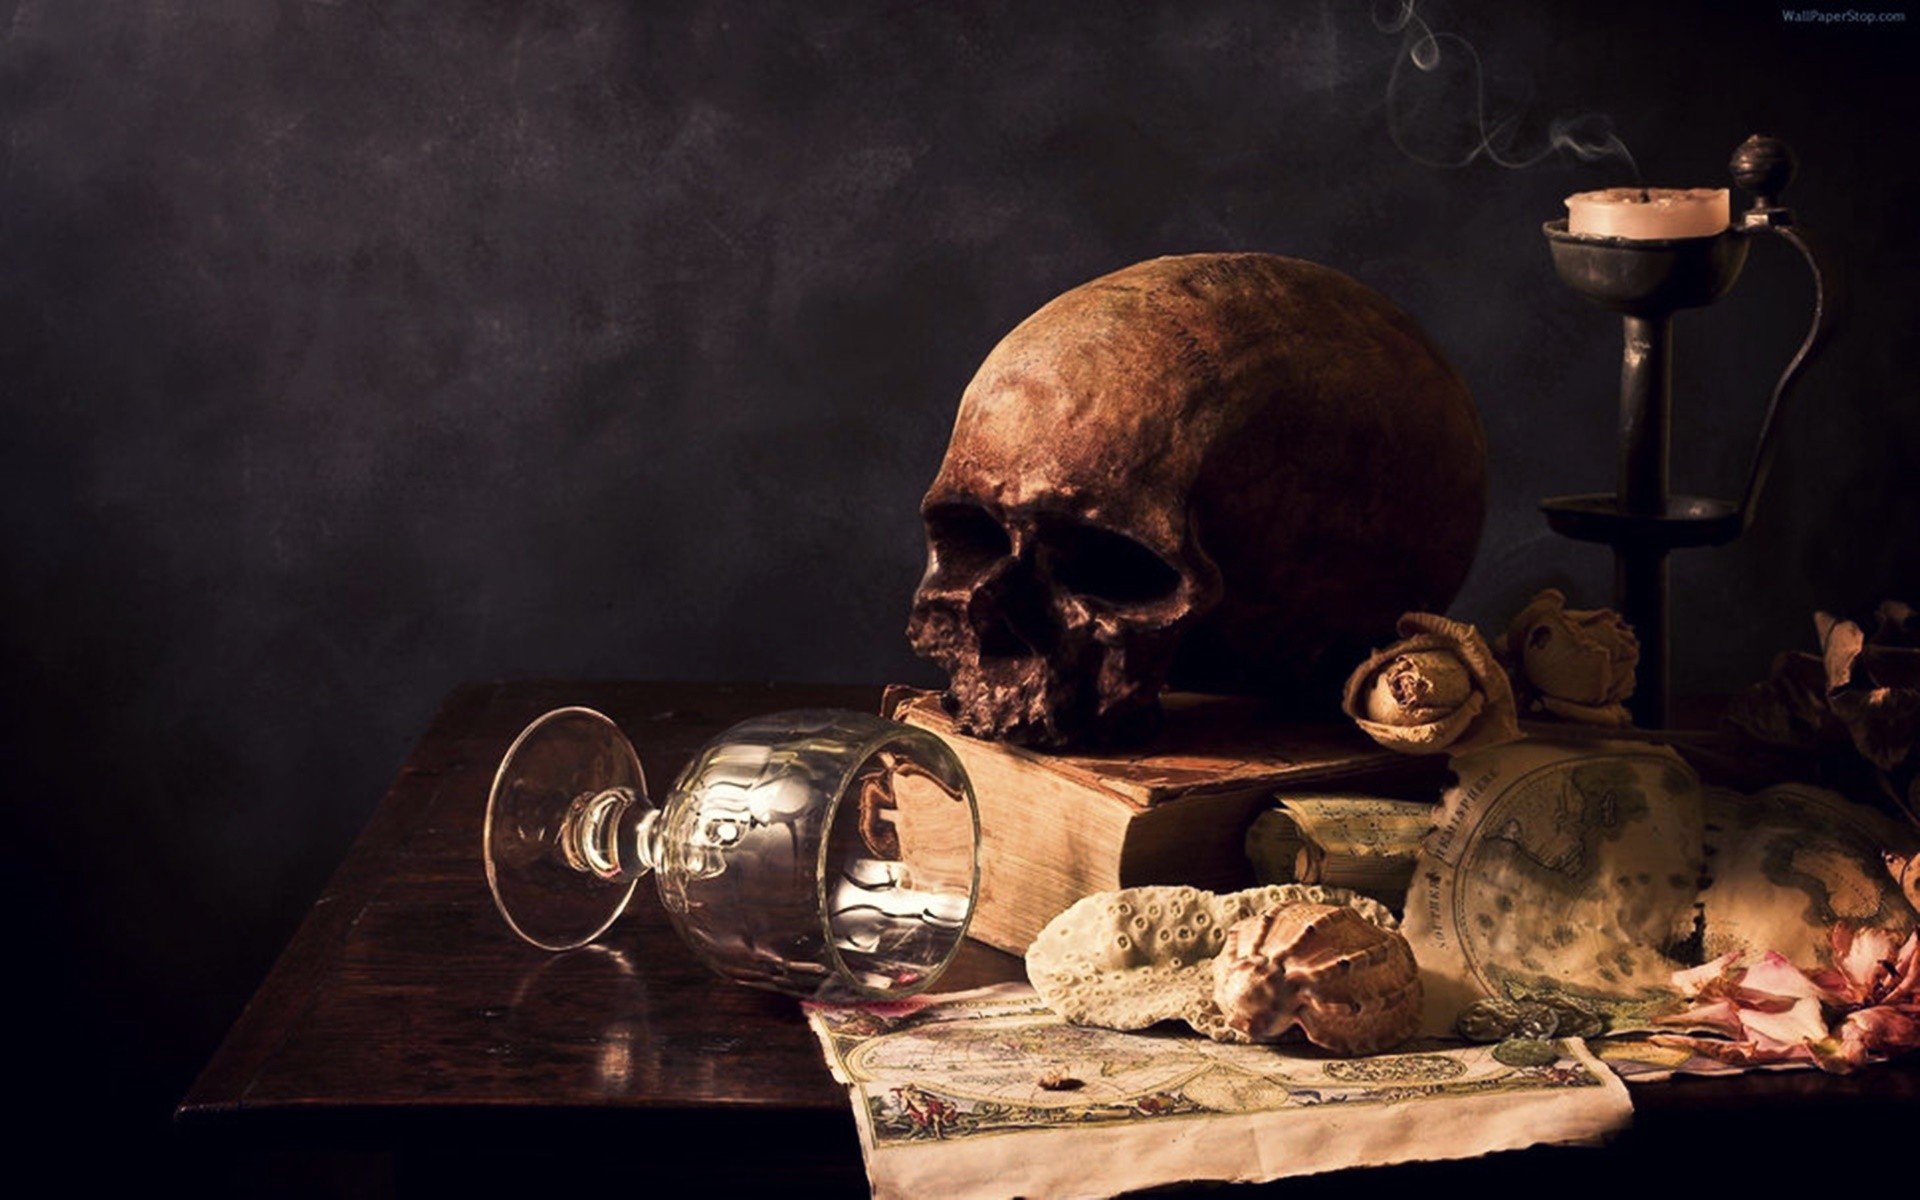 skull, Drinking glass, Table, Books, Map Wallpaper